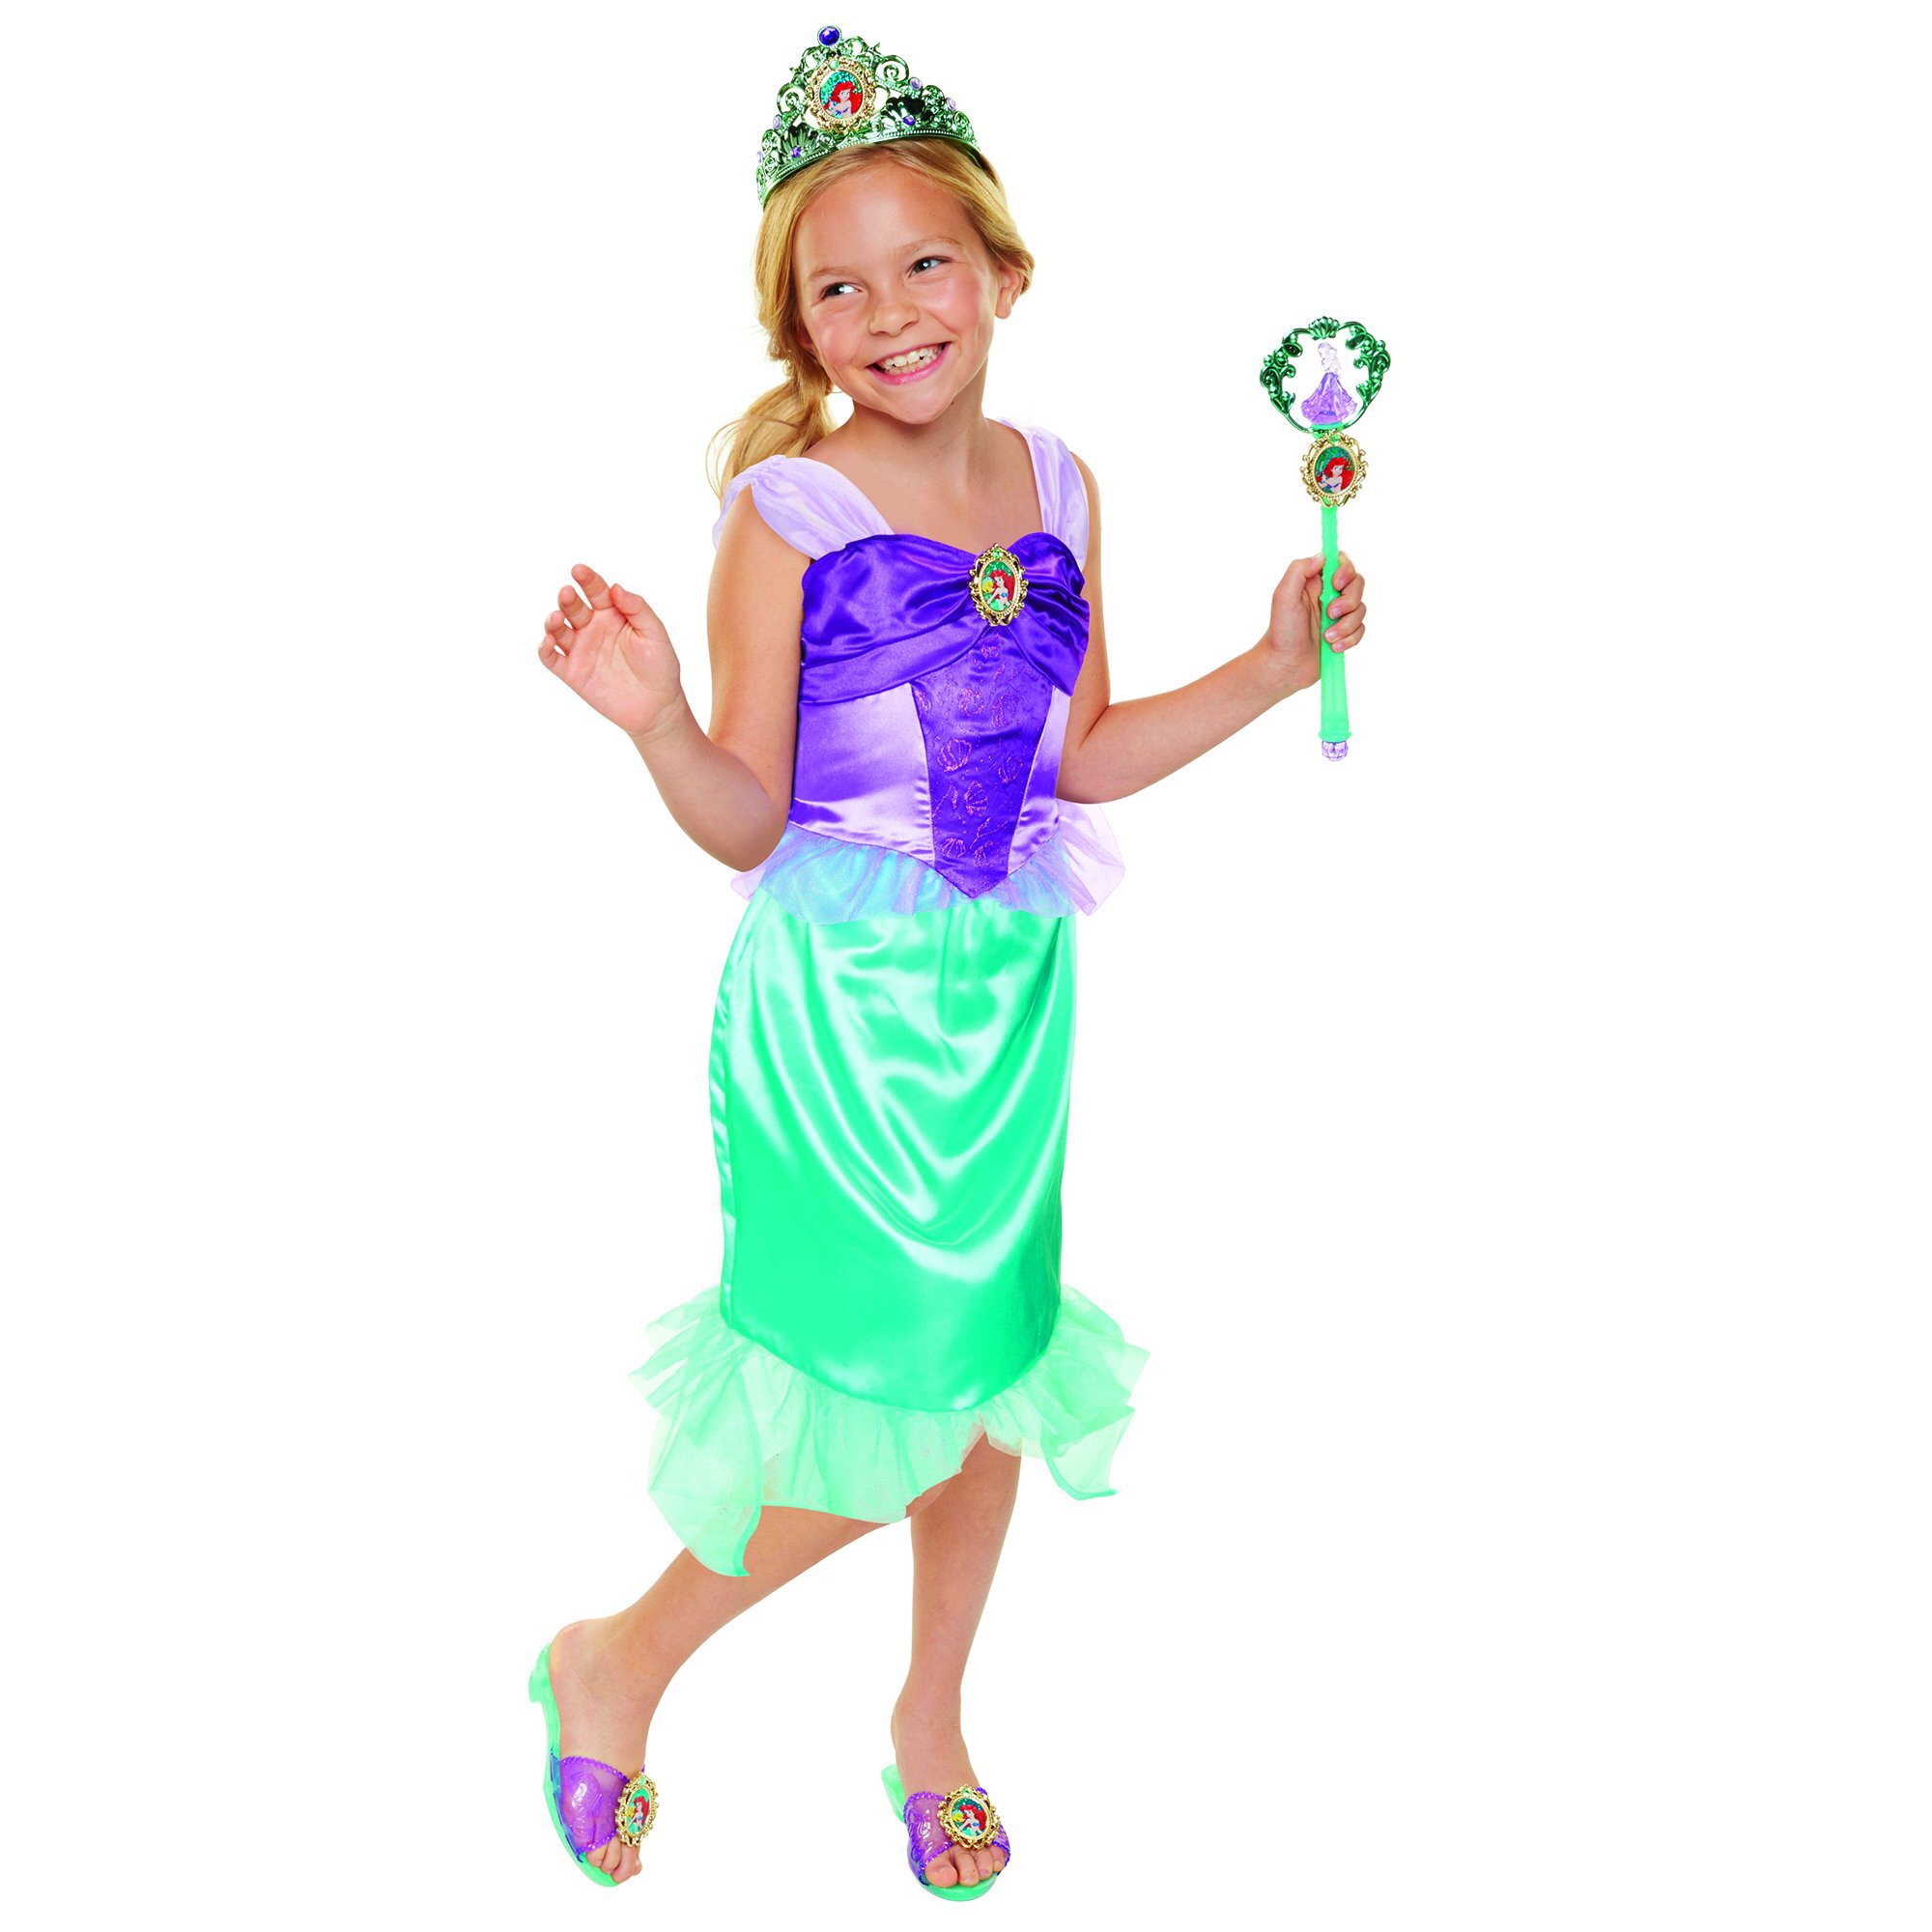 小美人鱼套装：裙子，魔法棒，鞋子，皇冠，只要$8.88